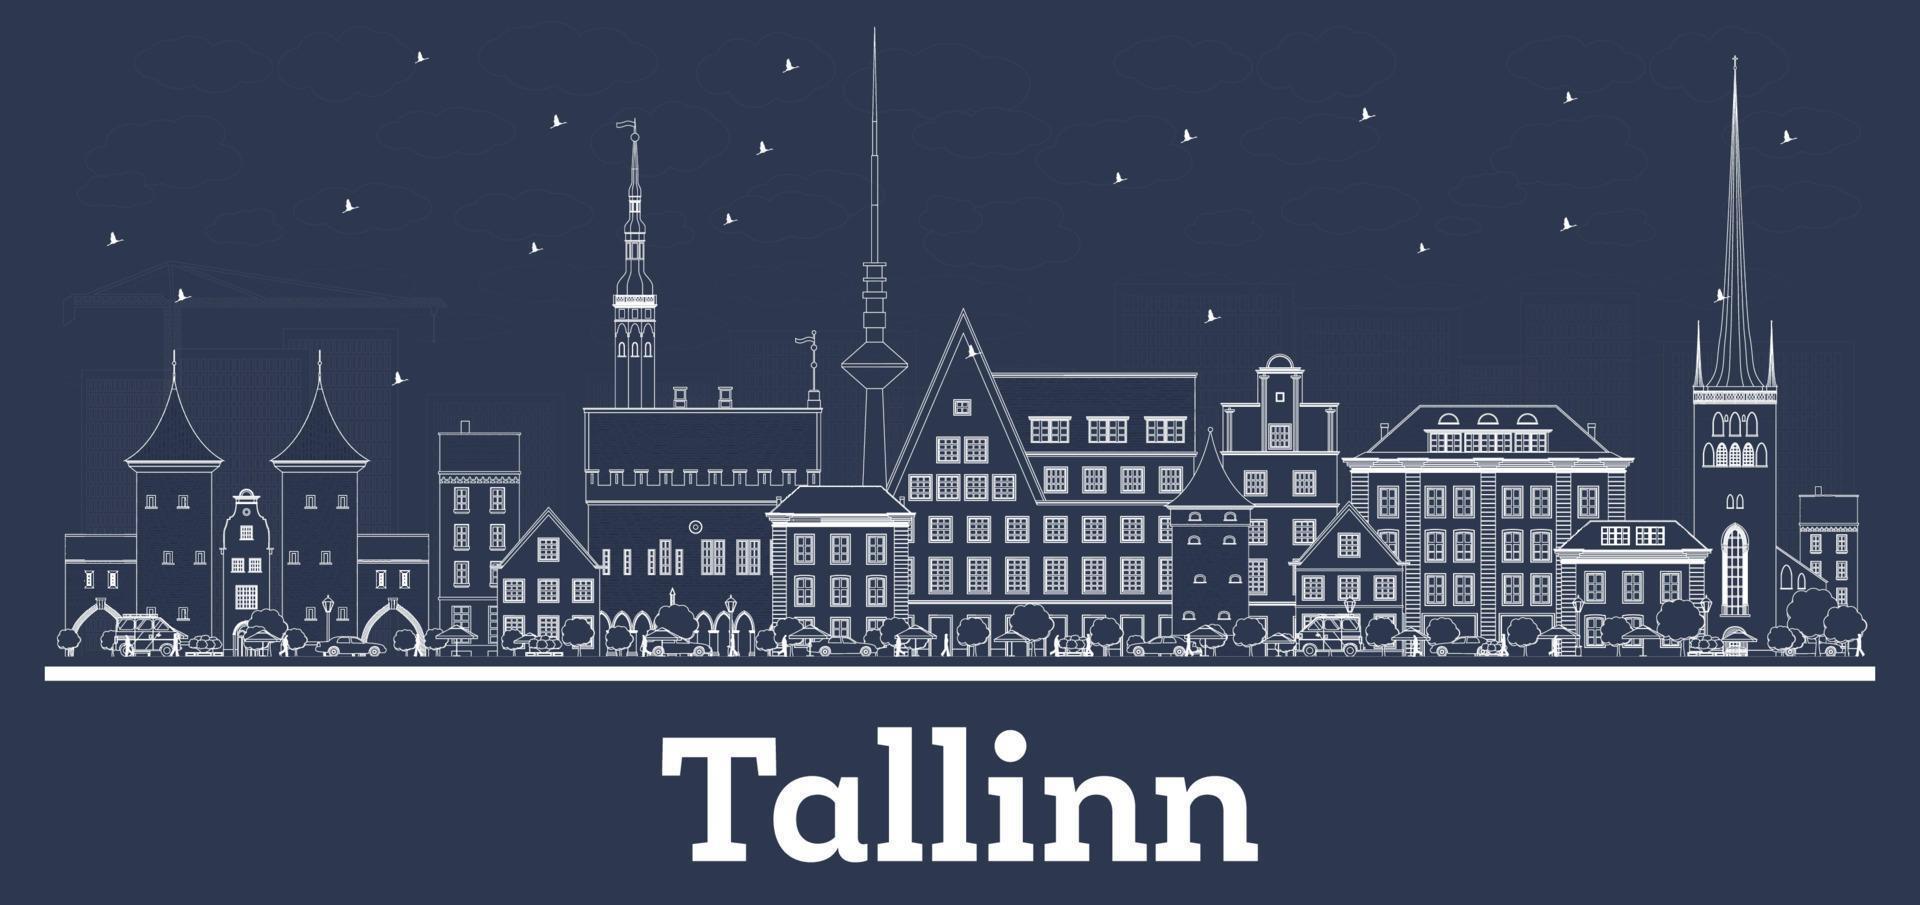 delineie o horizonte da cidade de tallinn estônia com edifícios brancos. vetor